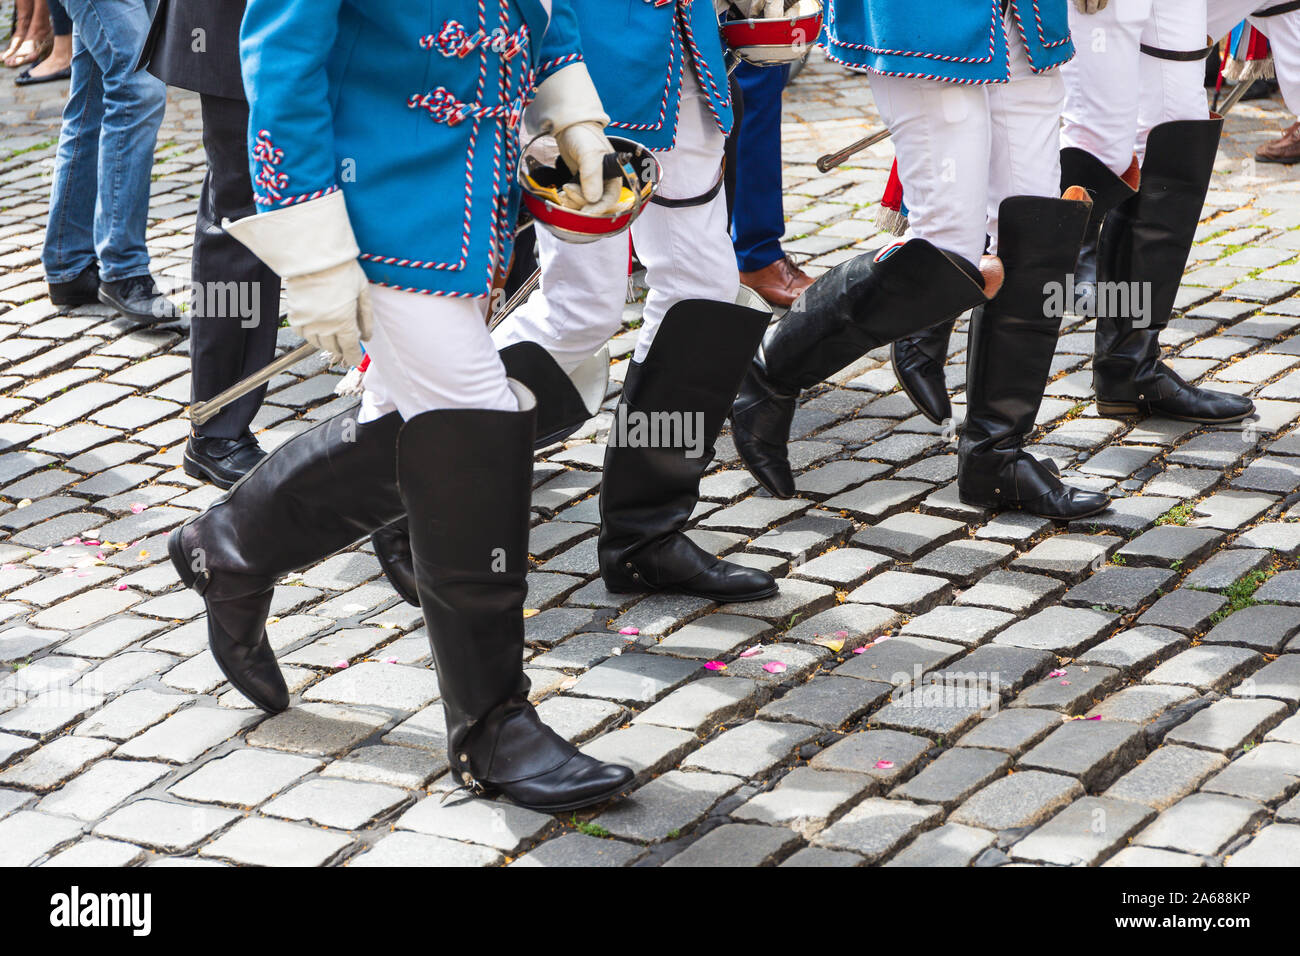 Mitglieder der studentischen Vereinigung in Uniform zu Fuß auf gepflasterten Straße Stockfoto